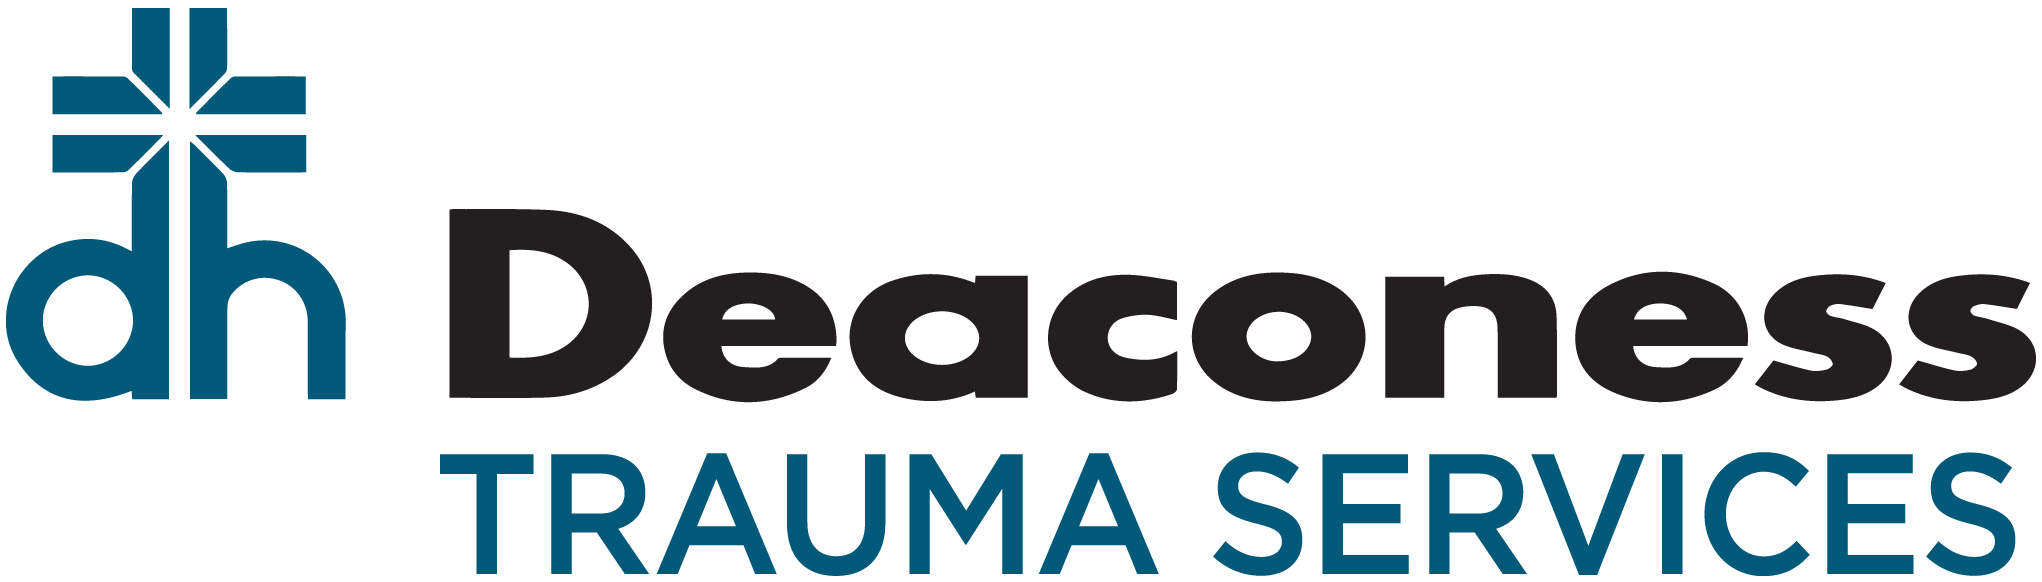 Deaconess Trauma Services